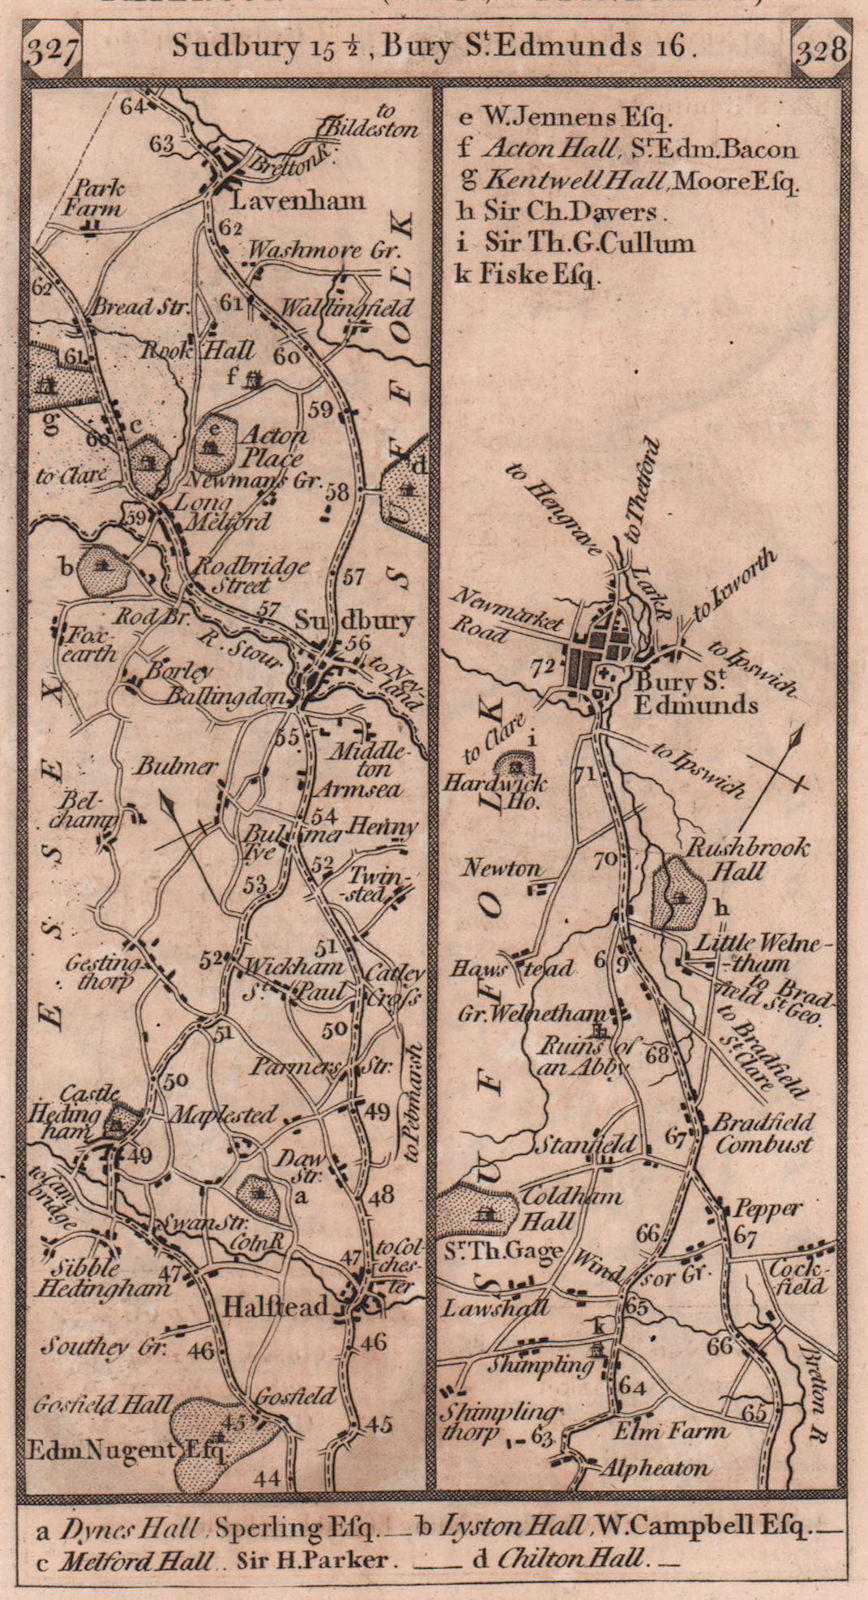 Associate Product Halstead-Sudbury-Lavenham-Bury St. Edmunds road strip map PATERSON 1803